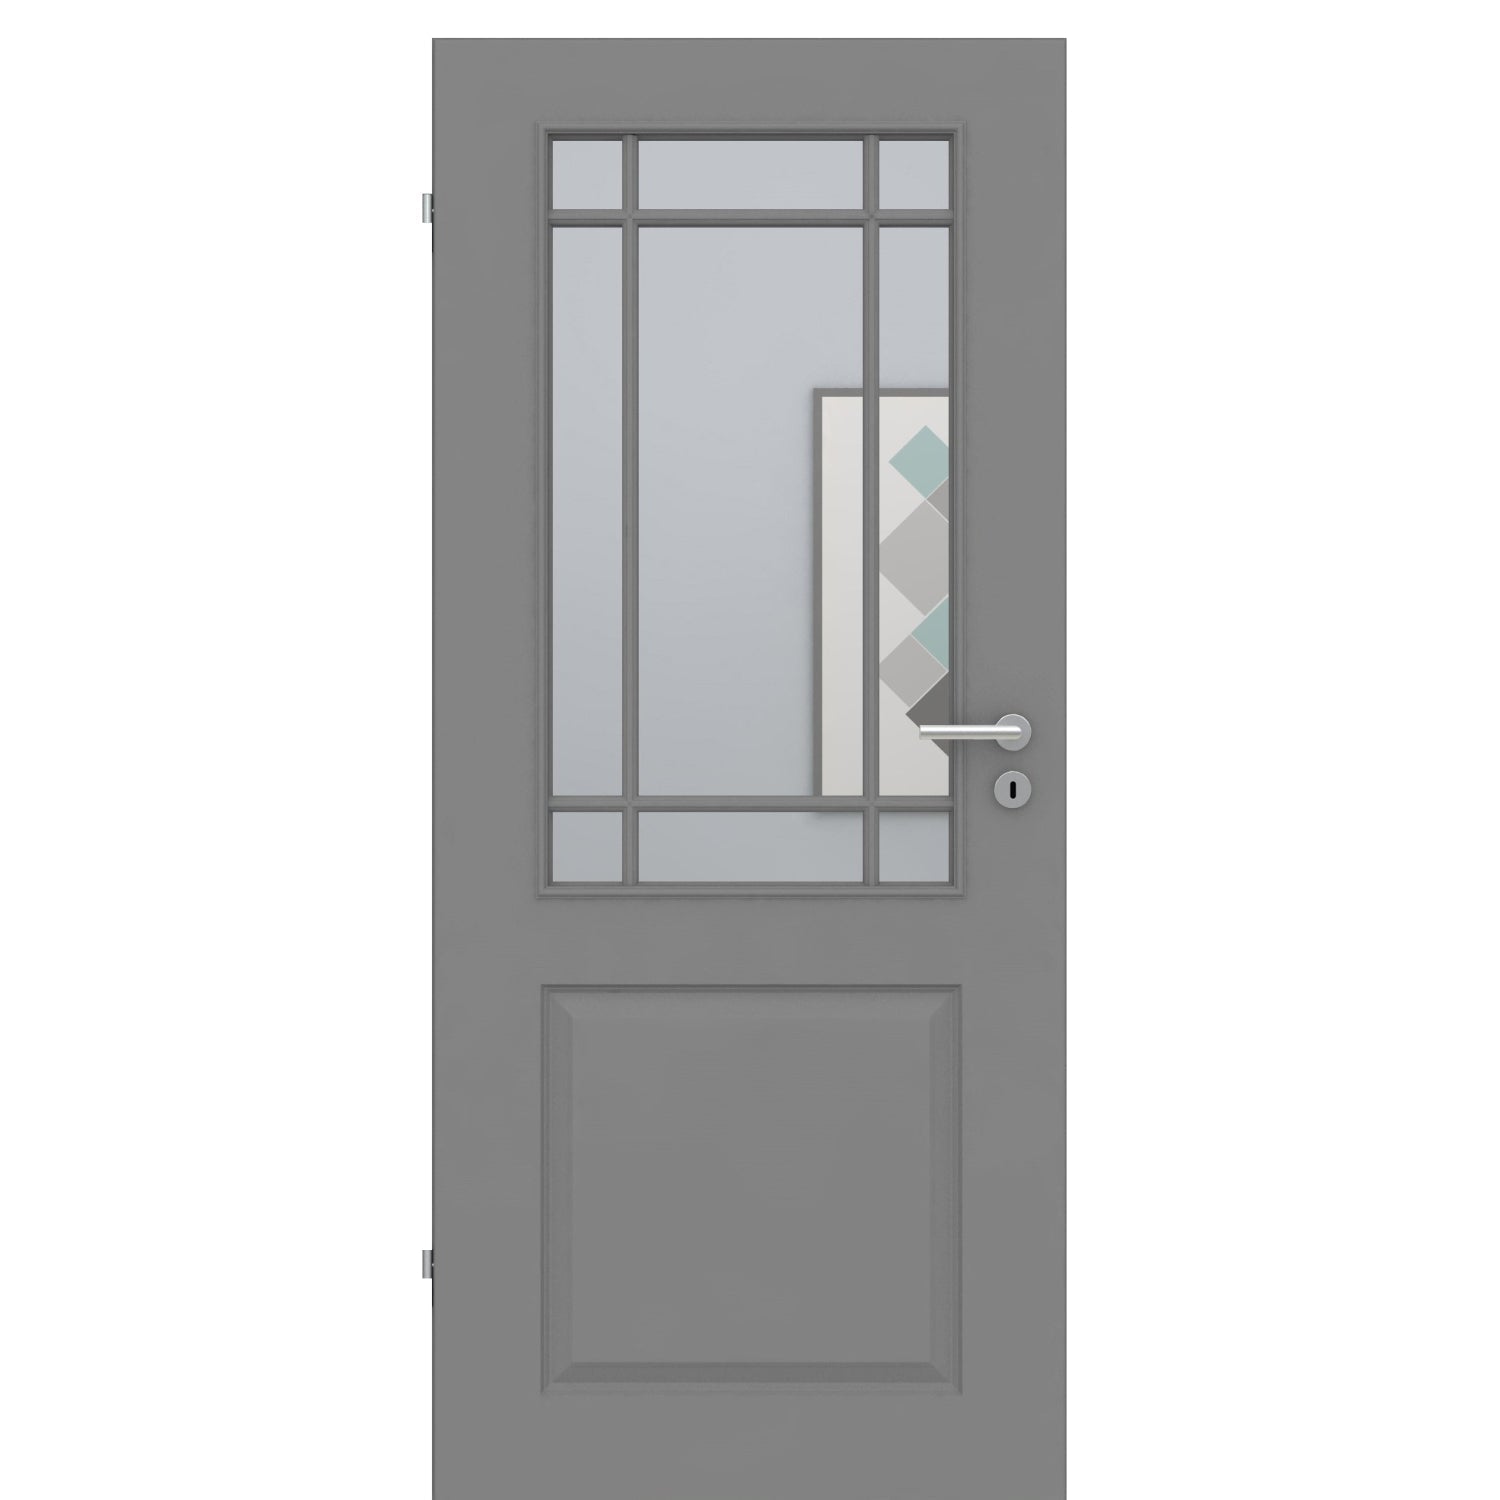 Zimmertür mit Lichtausschnitt mit Sprossenrahmen klassisch grau 2 Kassetten Designkante - Modell Stiltür K27LASPK